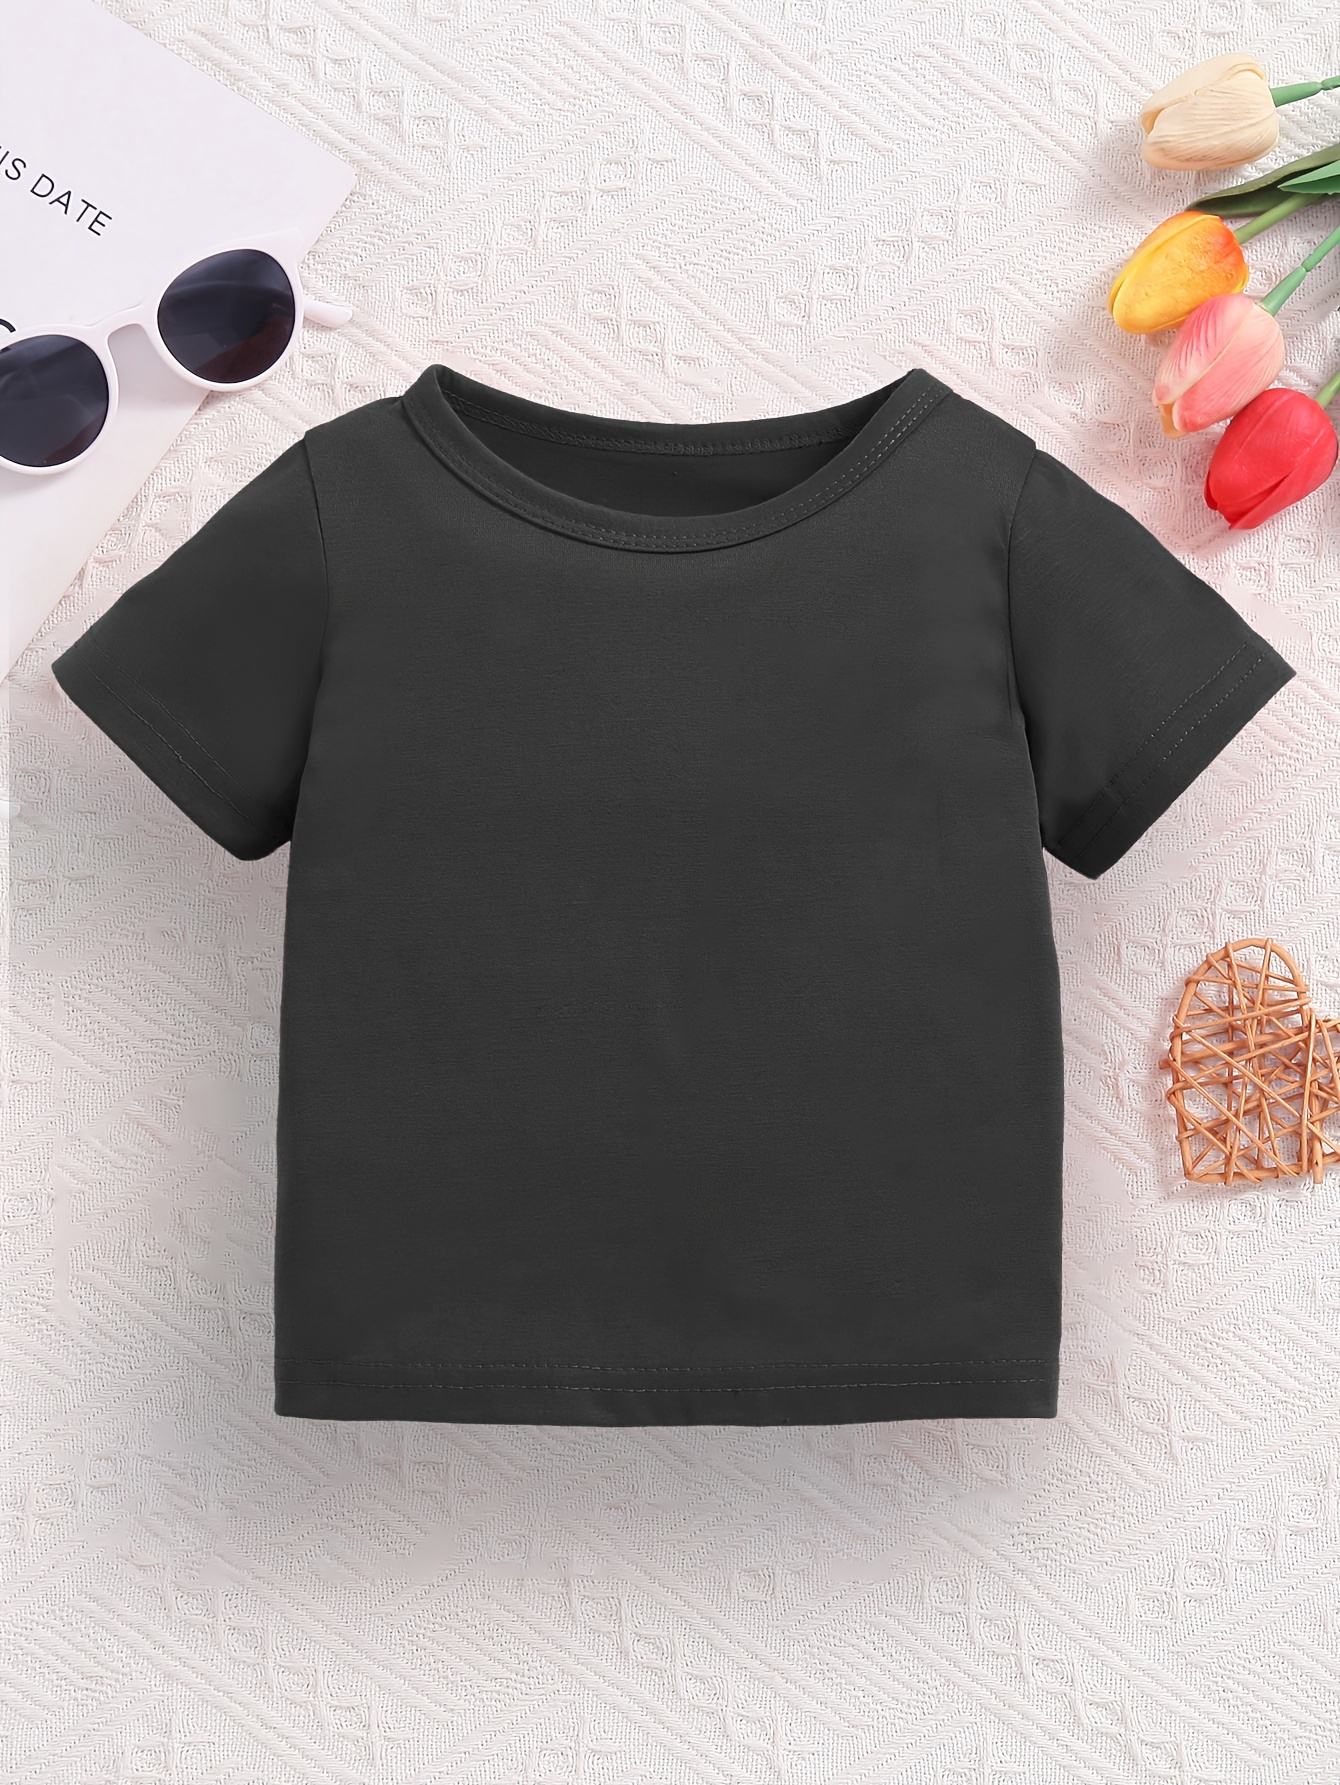 Camiseta negra liso para niños